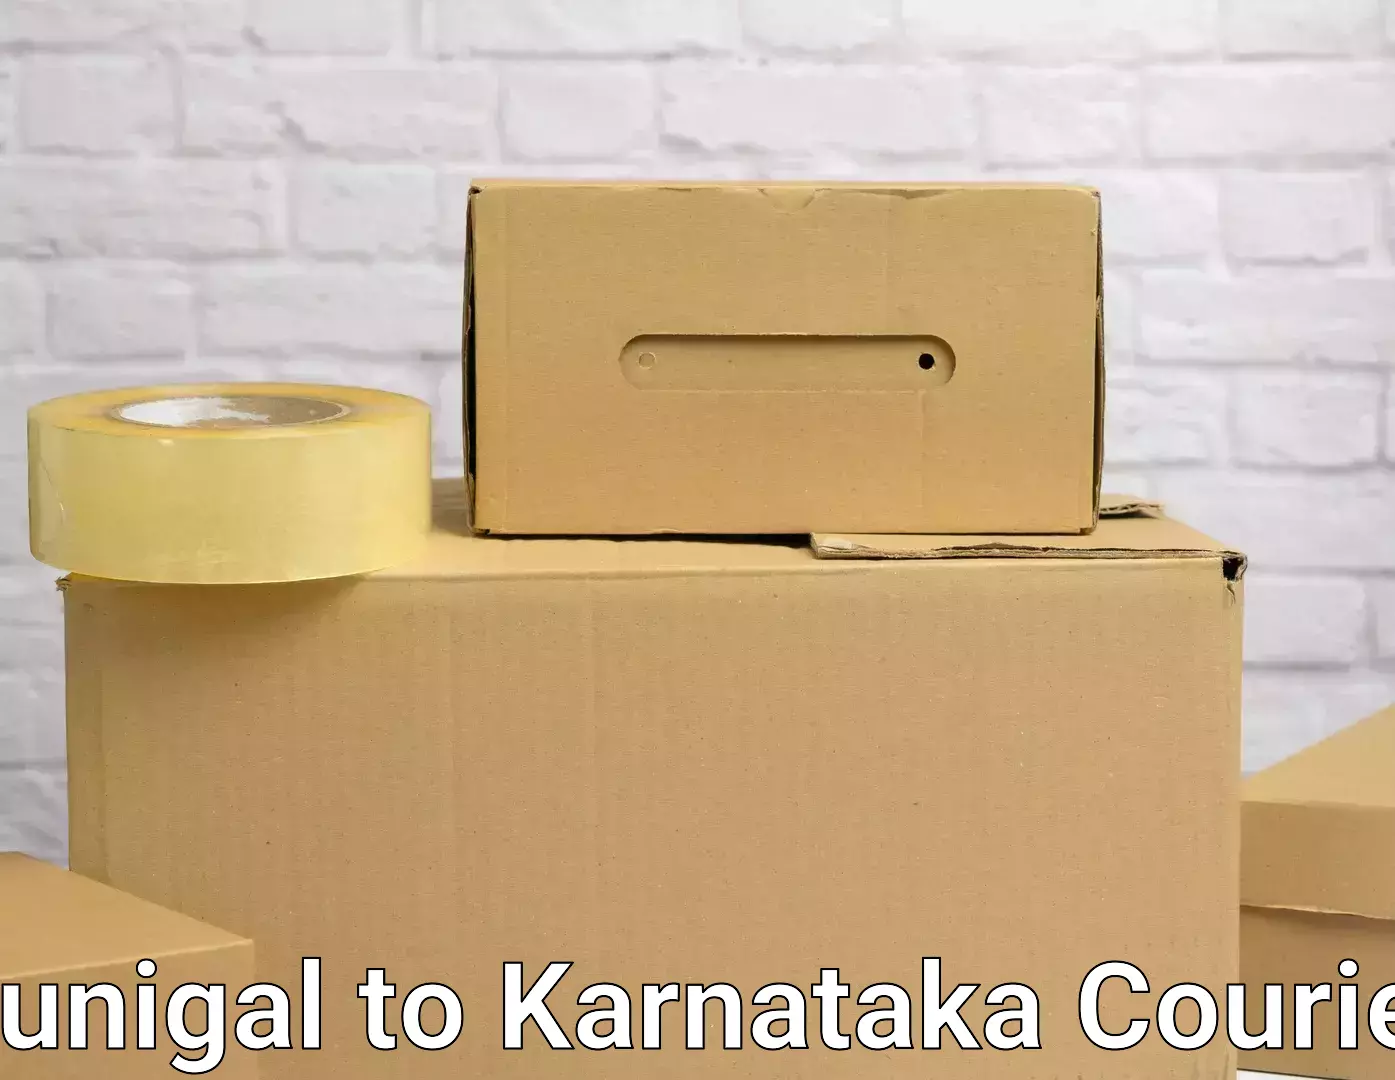 Reliable movers Kunigal to Karnataka